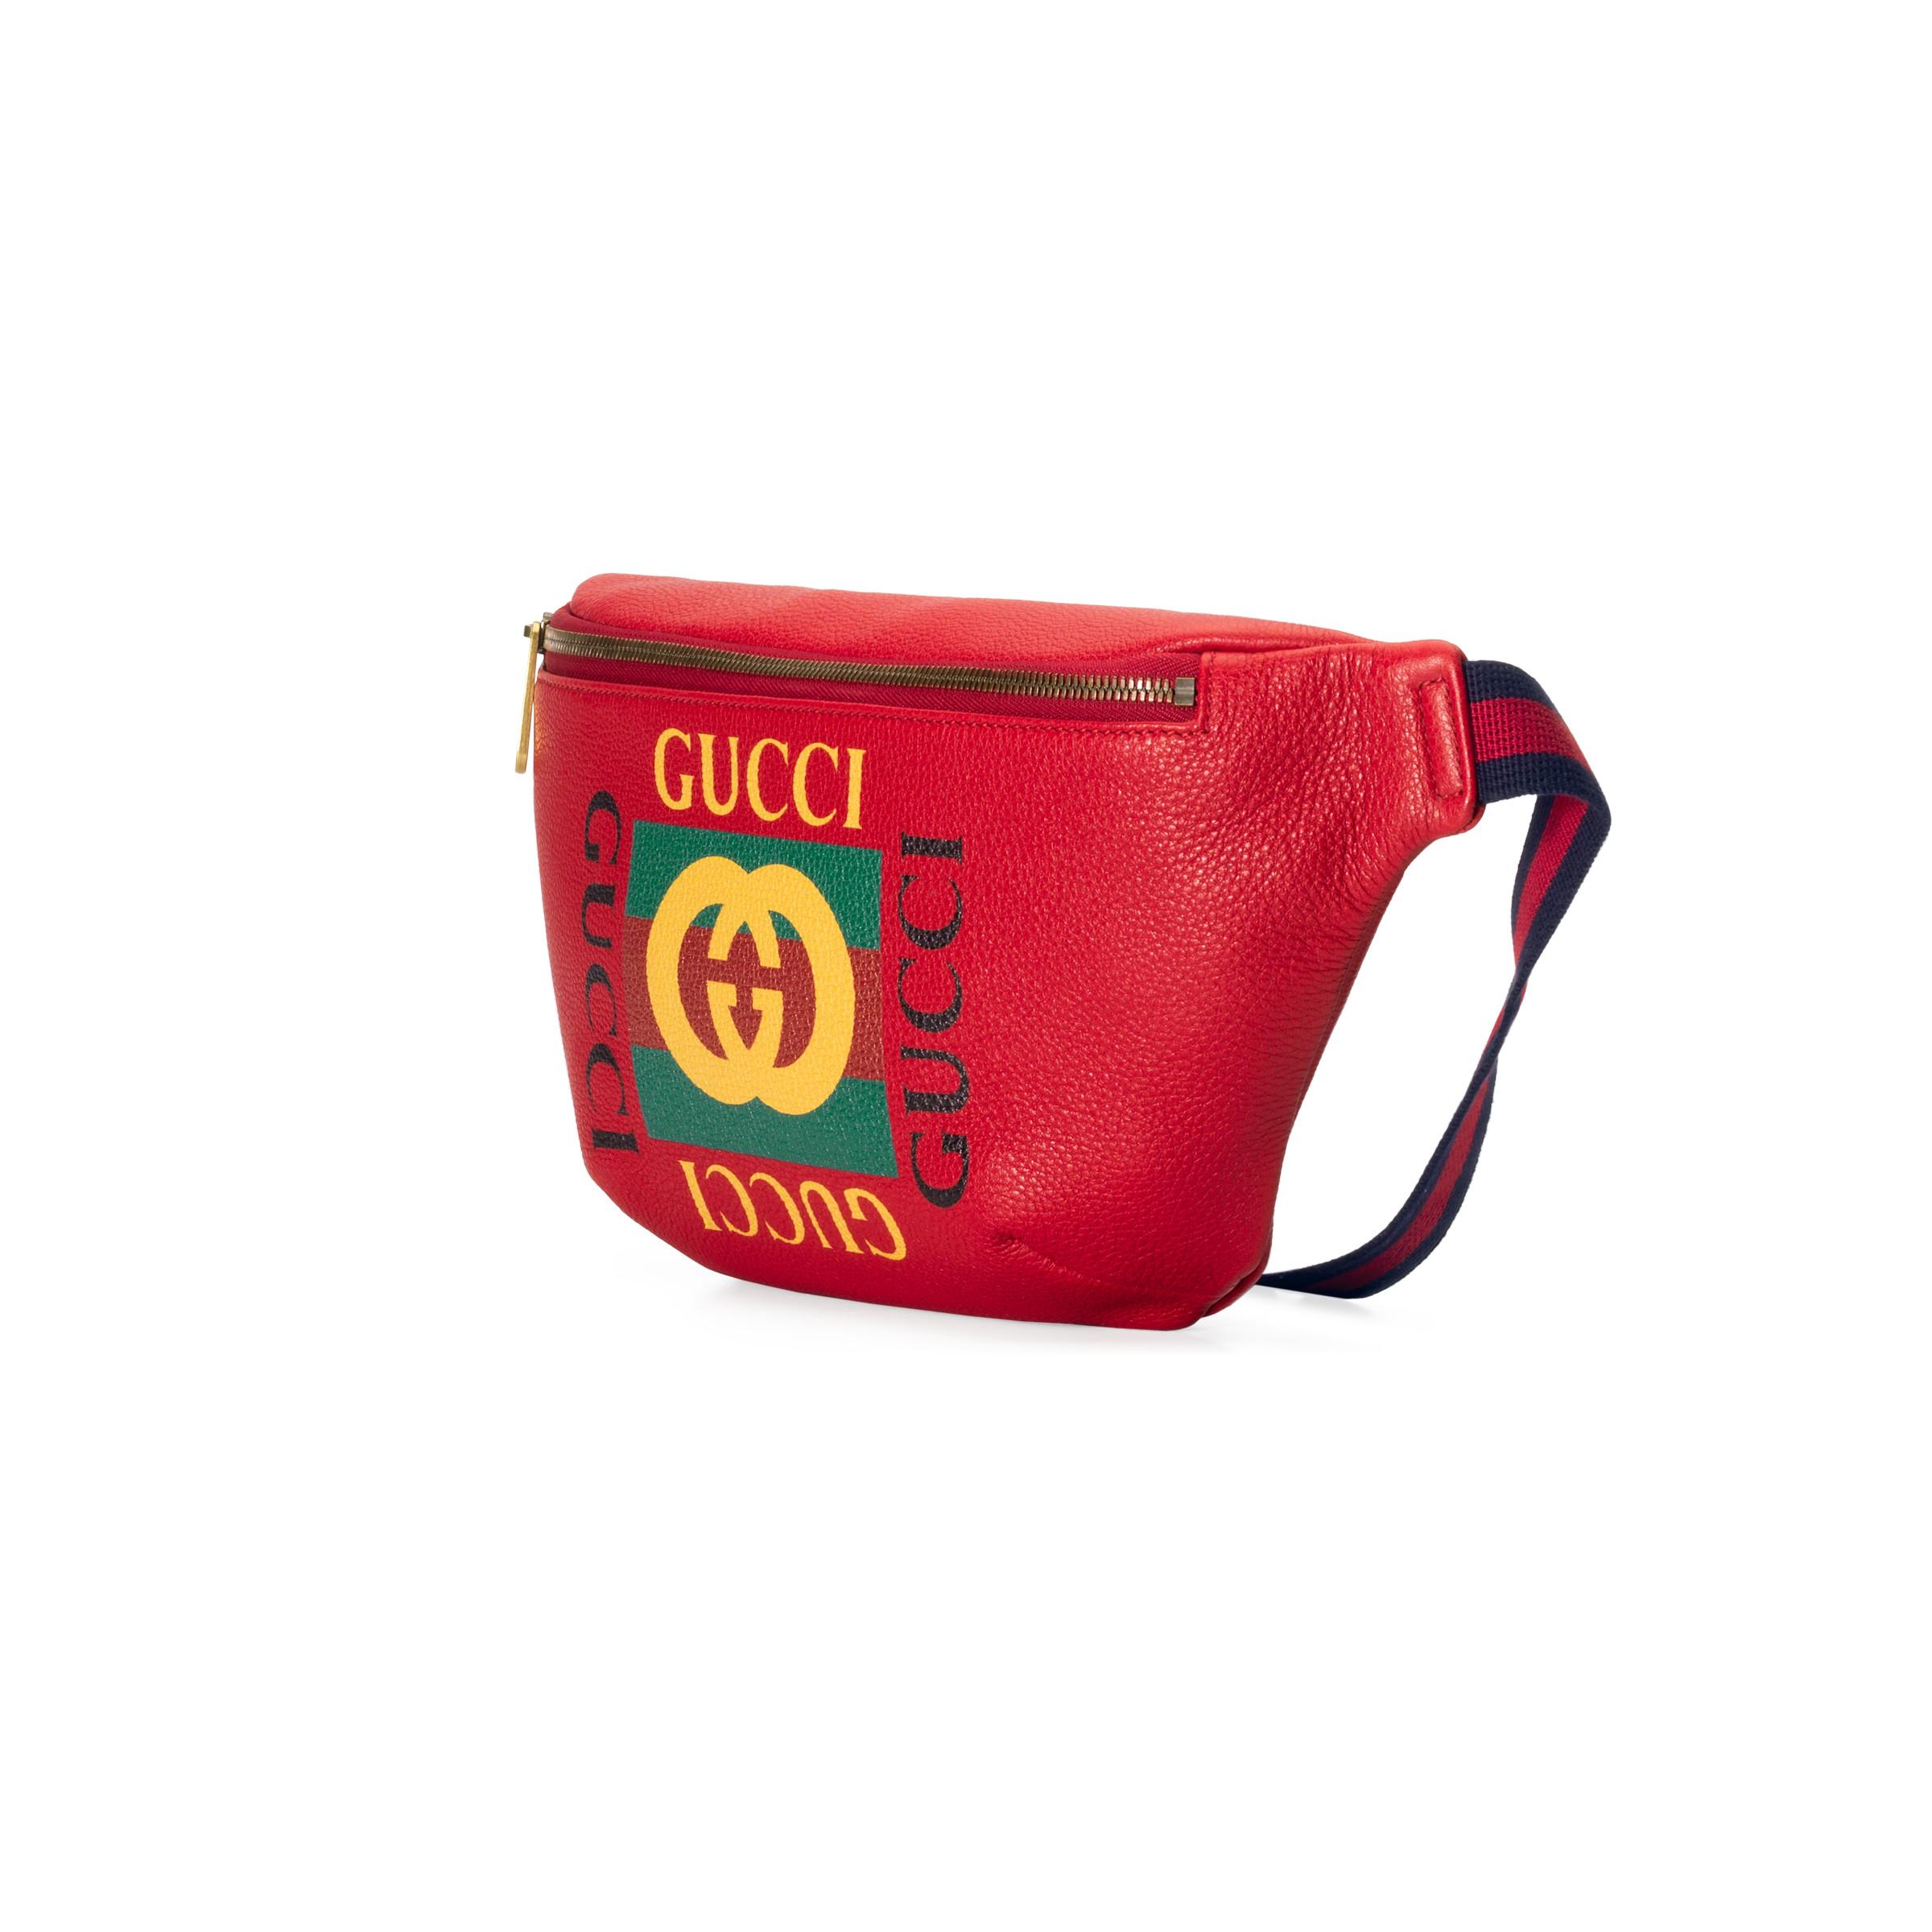 Blinke Himmel Fortrolig Gucci Print Leather Belt Bag in Red | Lyst